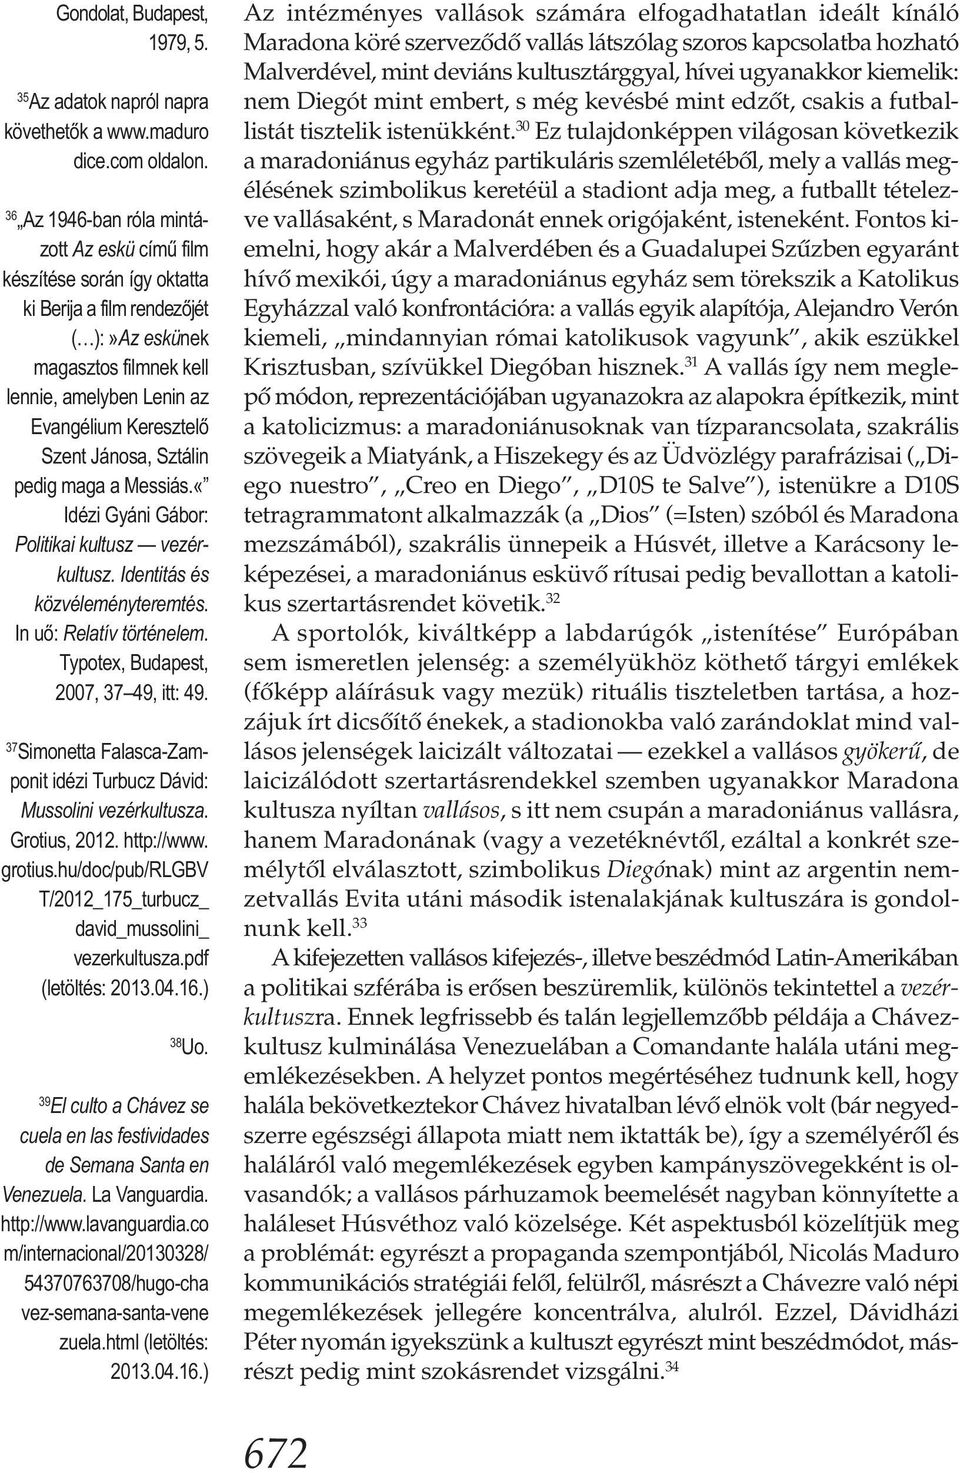 Jánosa, Sztálin pedig maga a Messiás.«Idézi Gyáni Gábor: Politikai kultusz vezérkultusz. Identitás és közvéleményteremtés. In uő: Relatív történelem. Typotex, Budapest, 2007, 37 49, itt: 49.